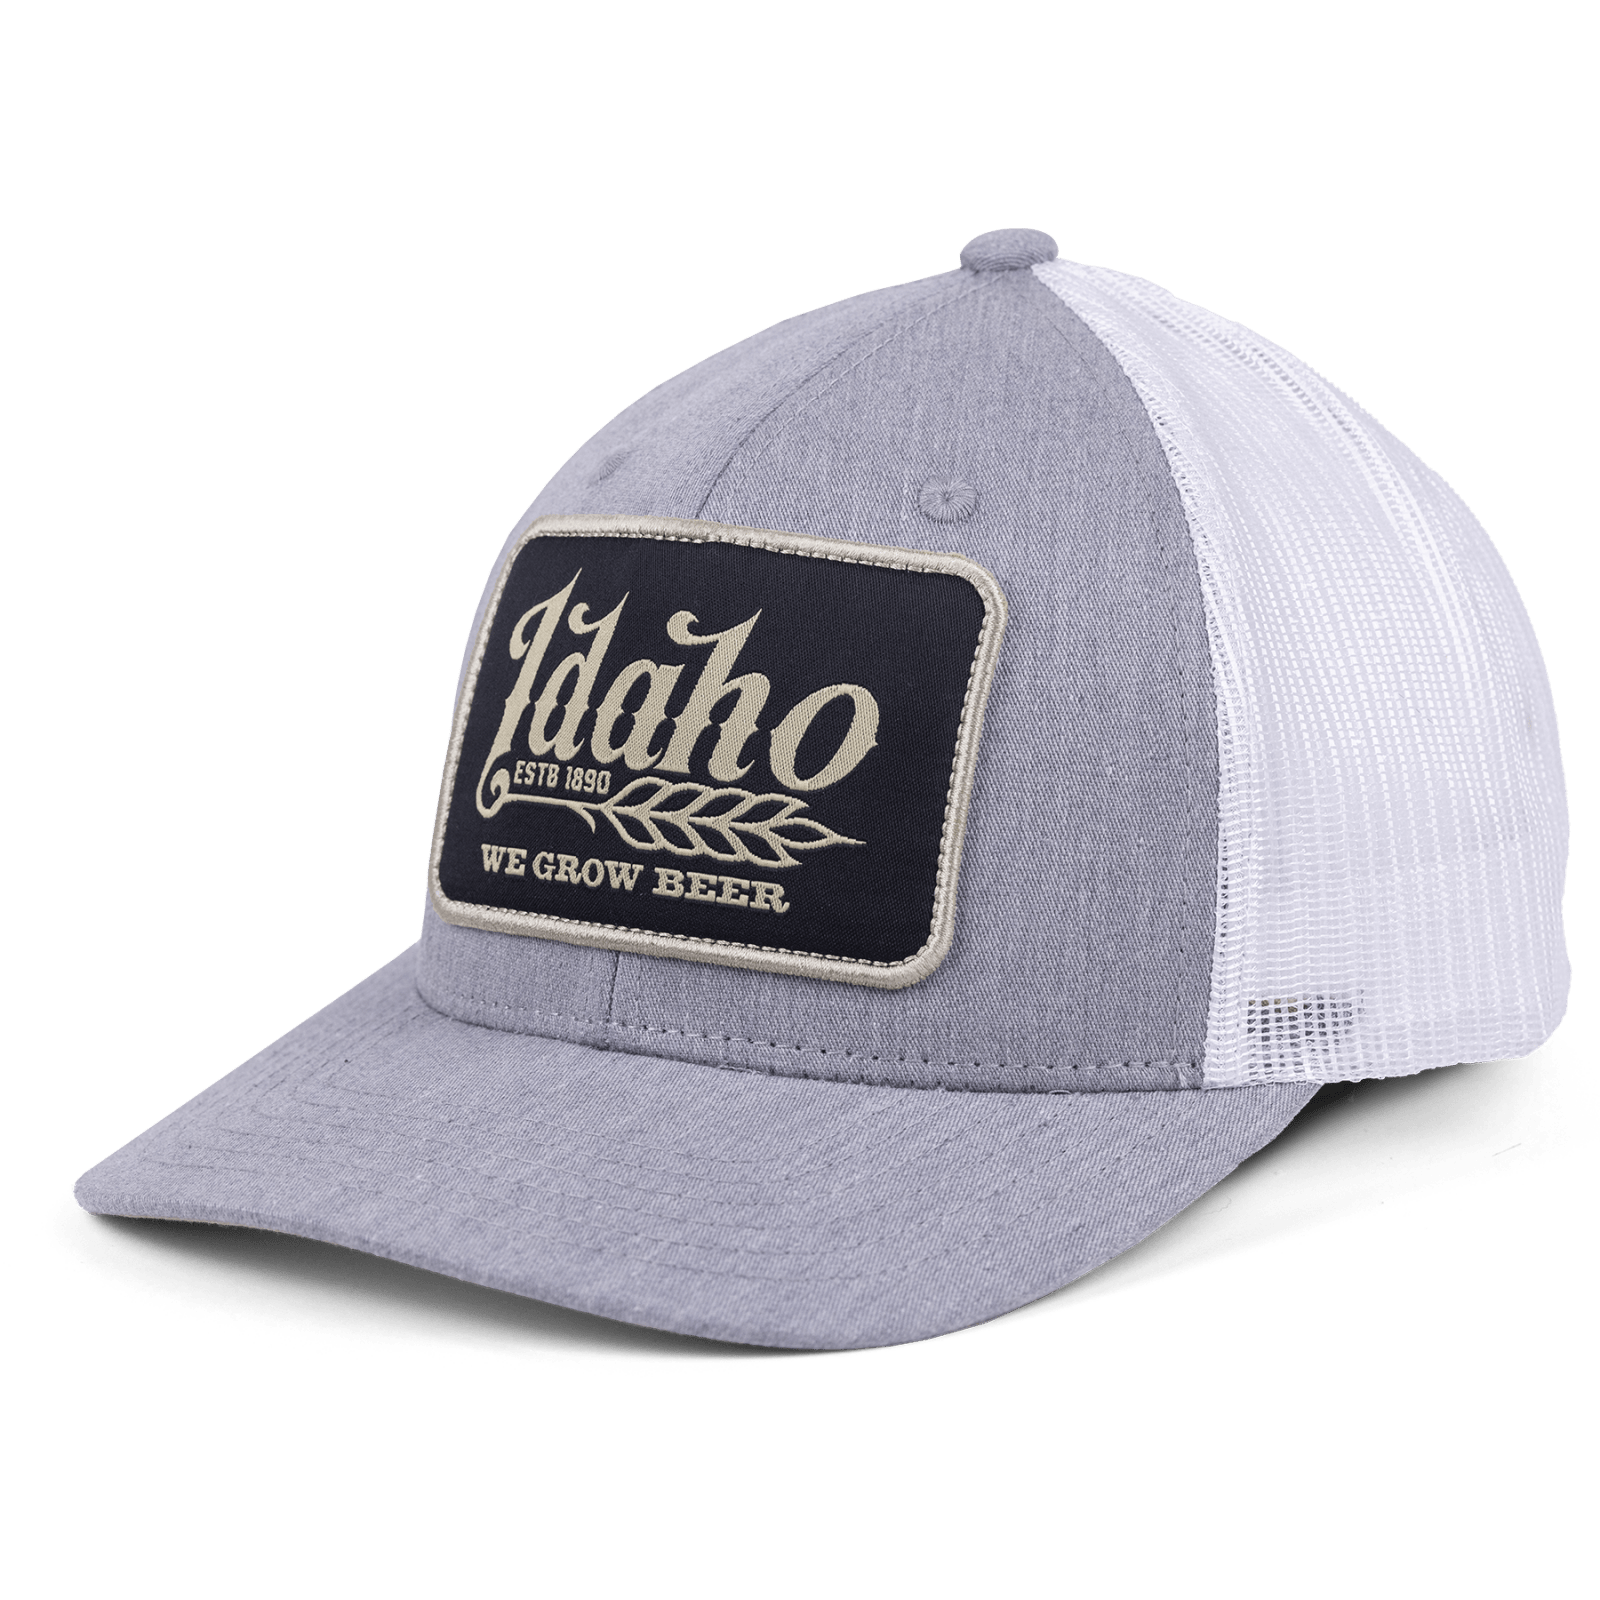 Rural Cloth Hats Idaho We Grow Beer Hat